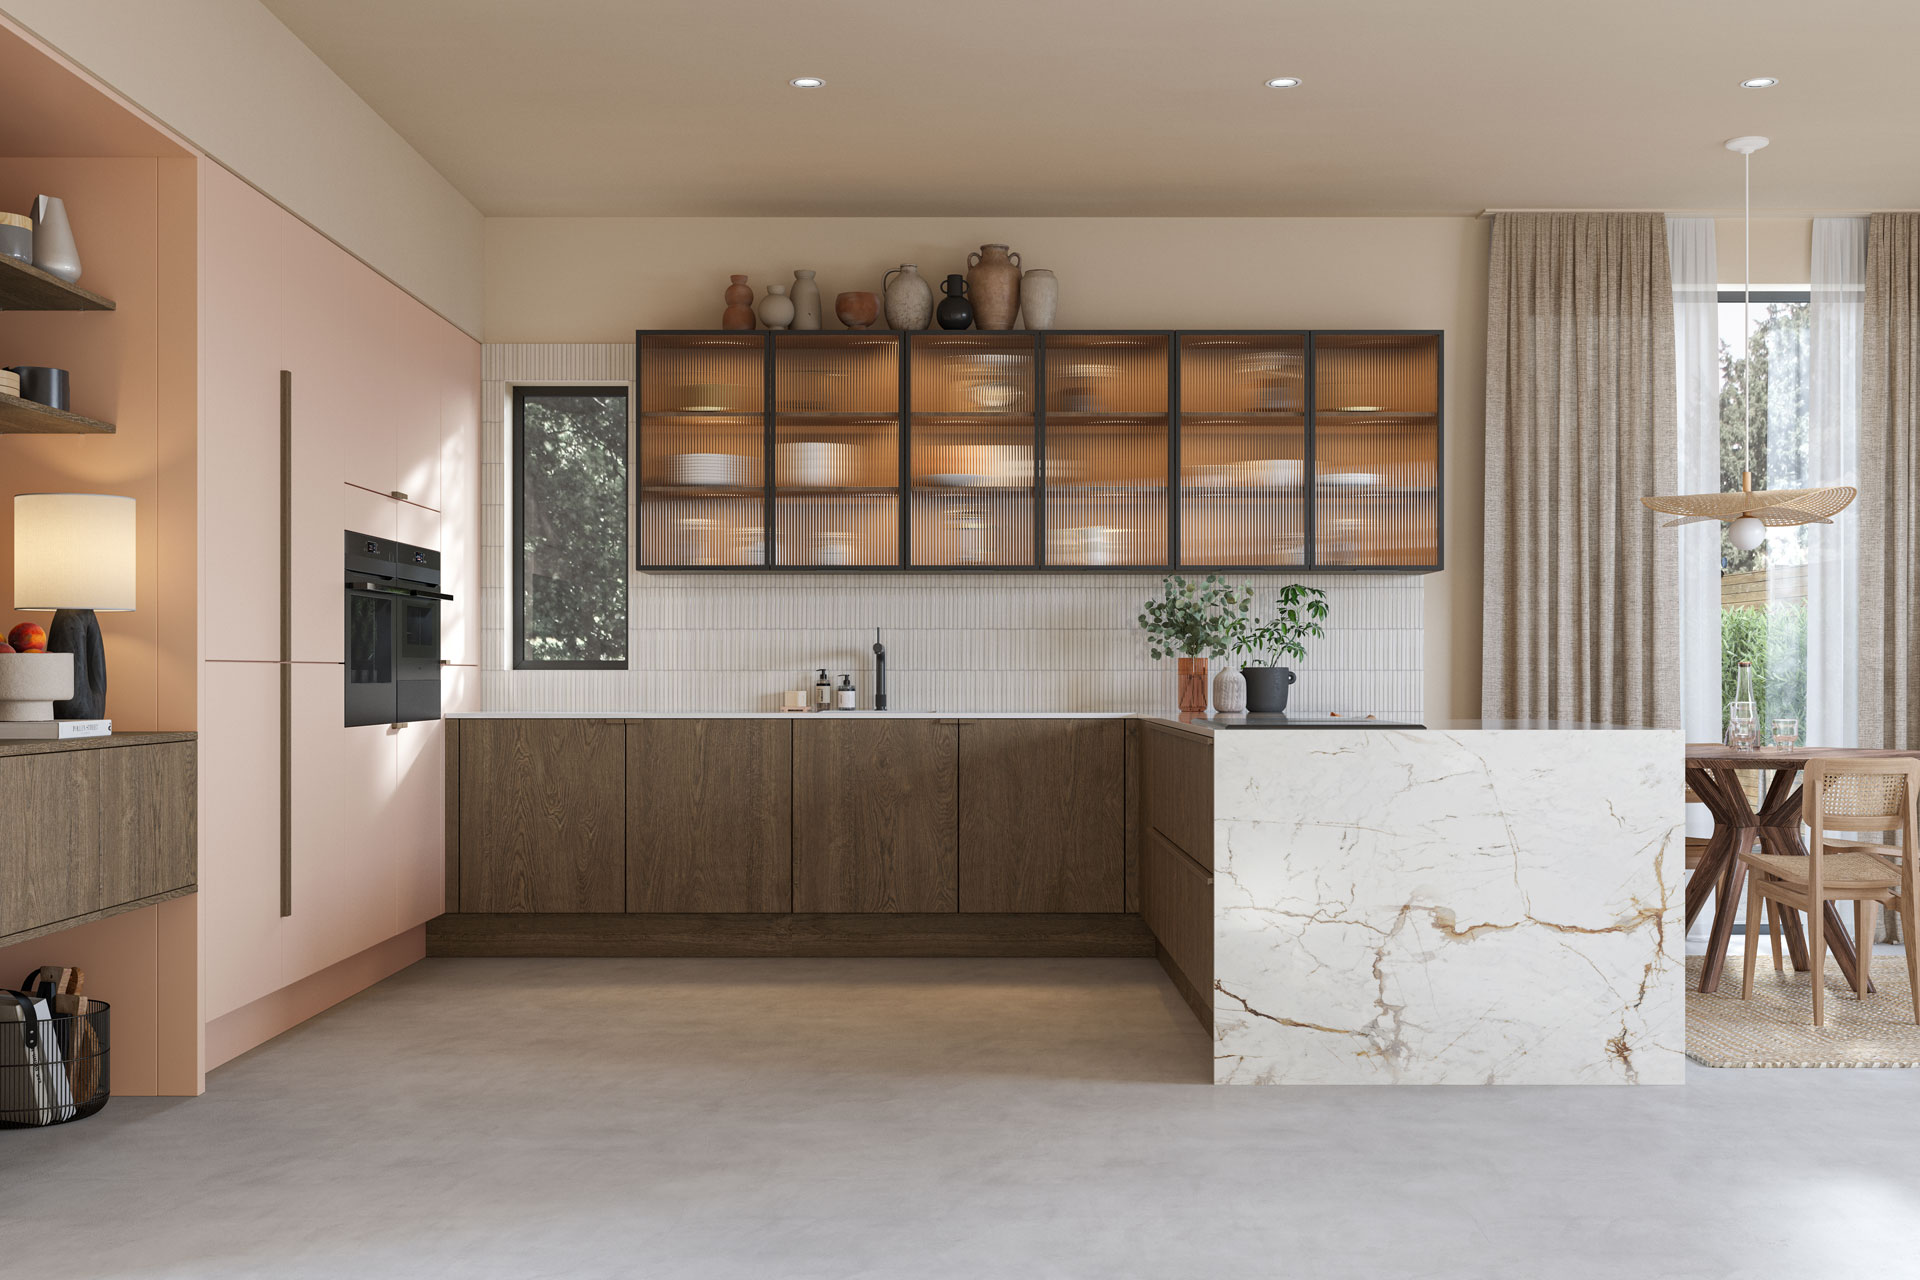 Modern kitchen with dark wooden cabinets and white stone worktops.